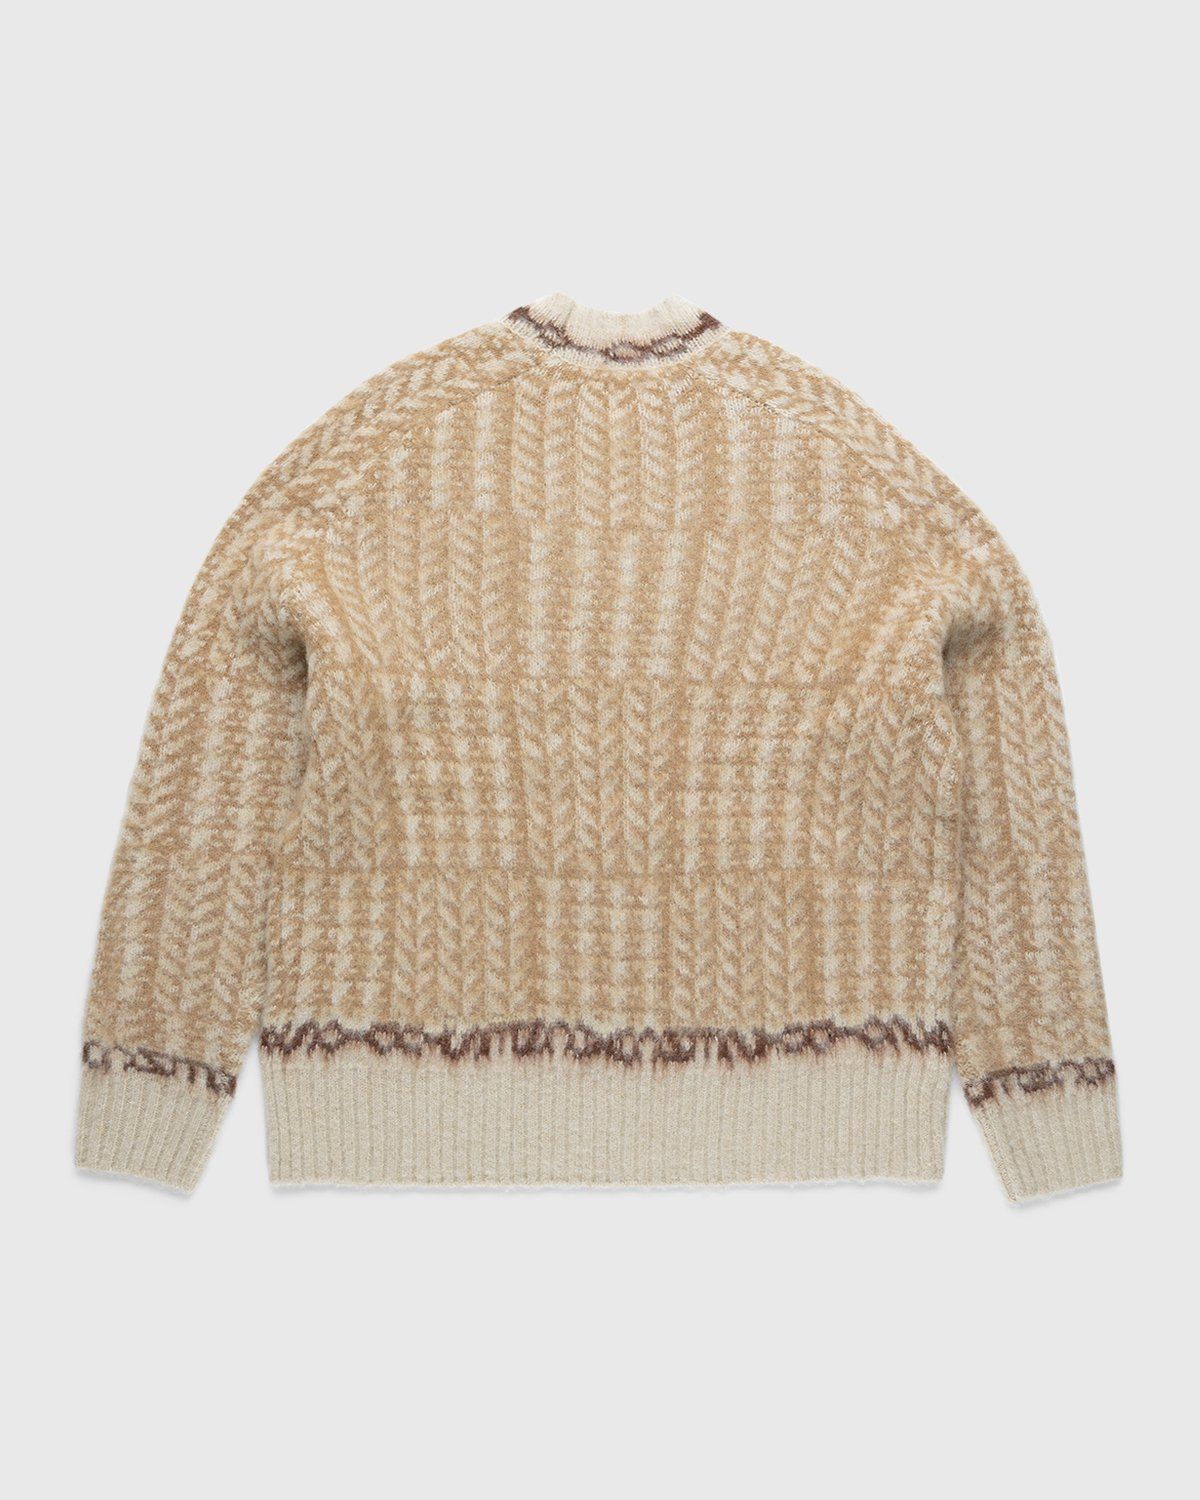 Acne Studios – Knit Sweater Beige | Highsnobiety Shop